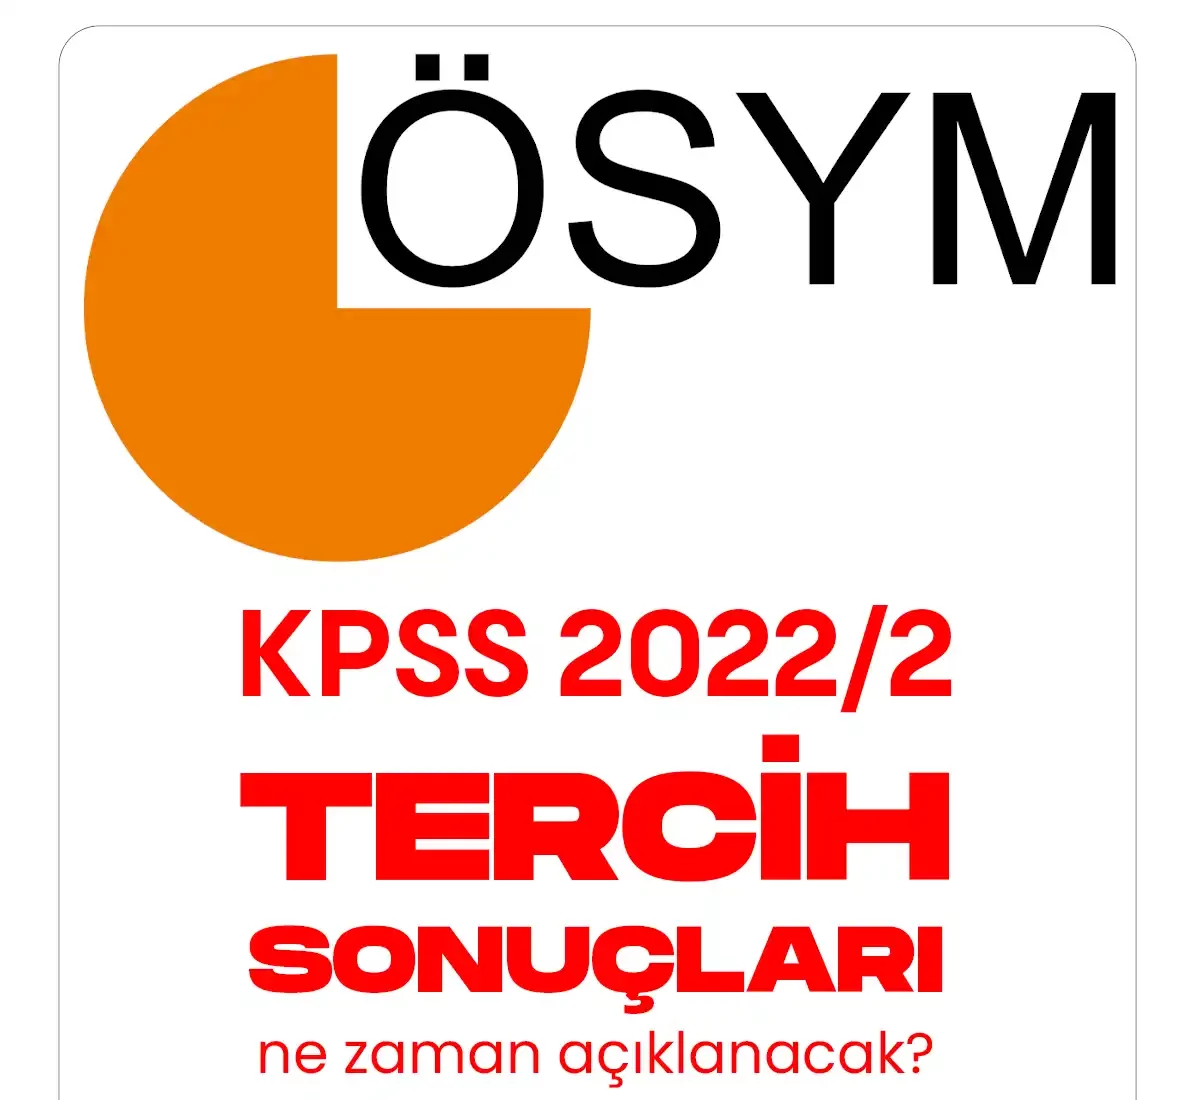 KPSS 2022/2 tercih sonuçları ne zaman açıklanıyor.